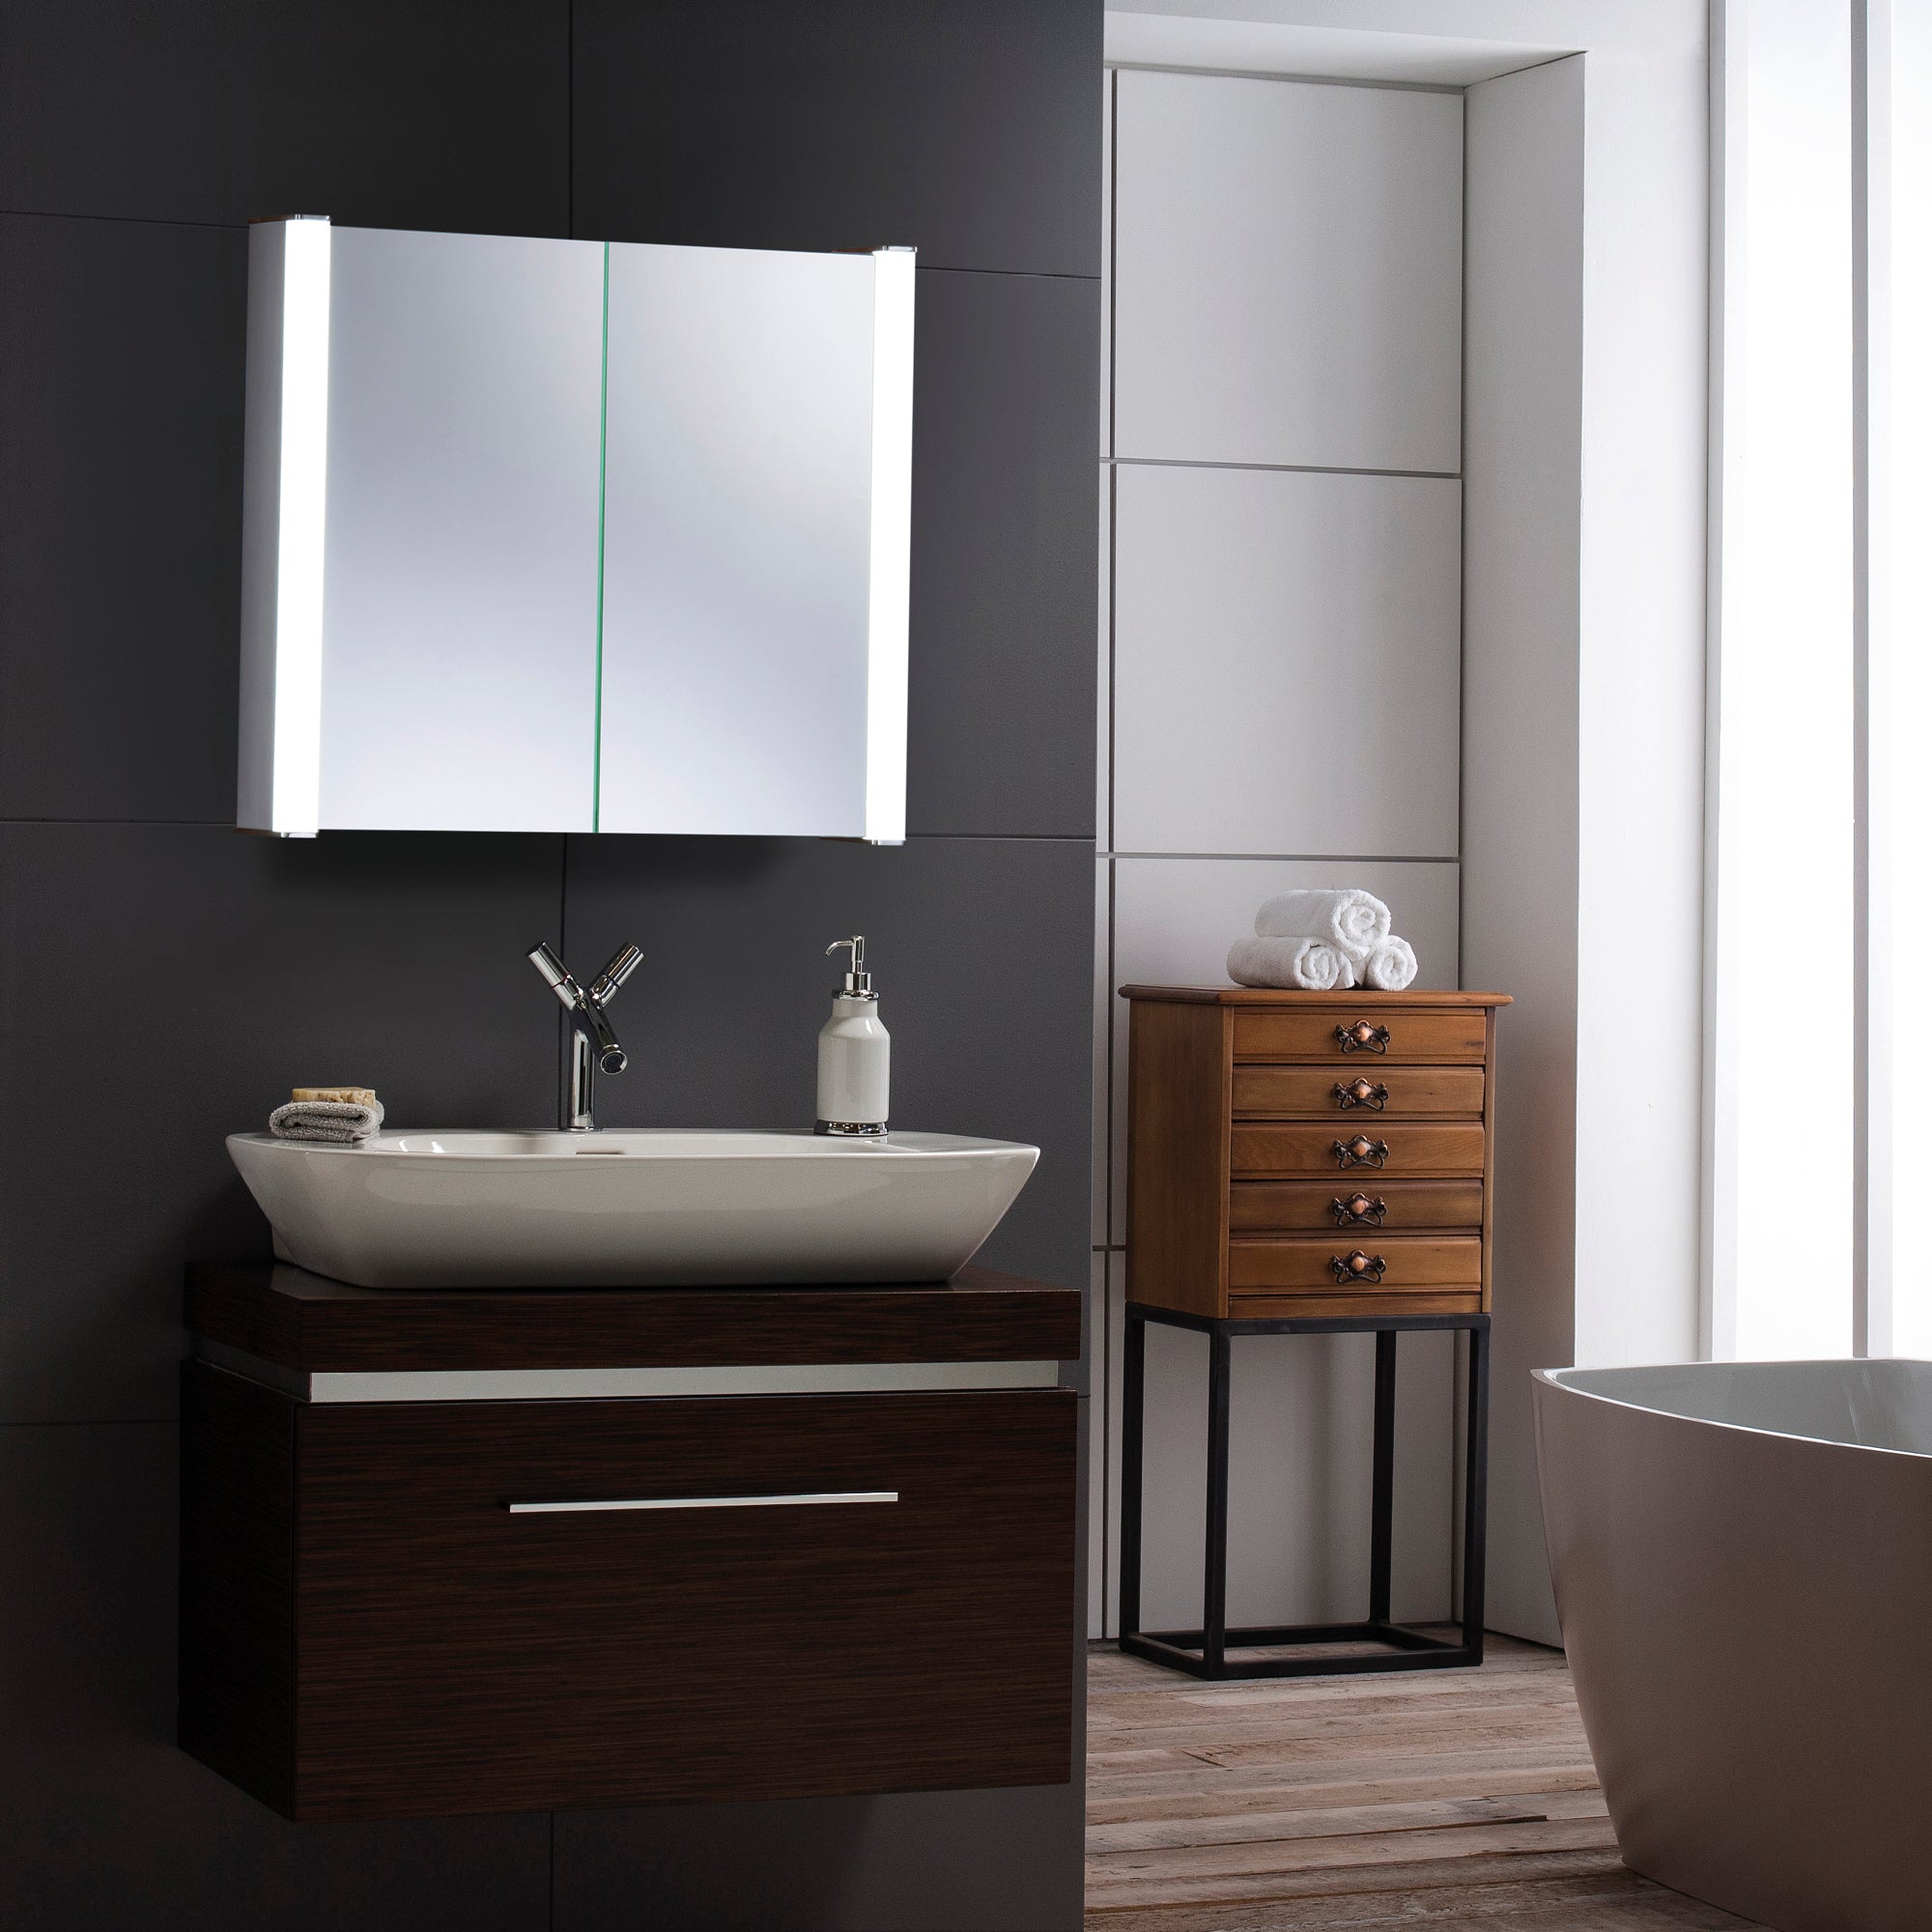 Quasar LED Illuminated Bathroom Mirror Cabinet CABM12 Size-60Hx65Wx16Dcm